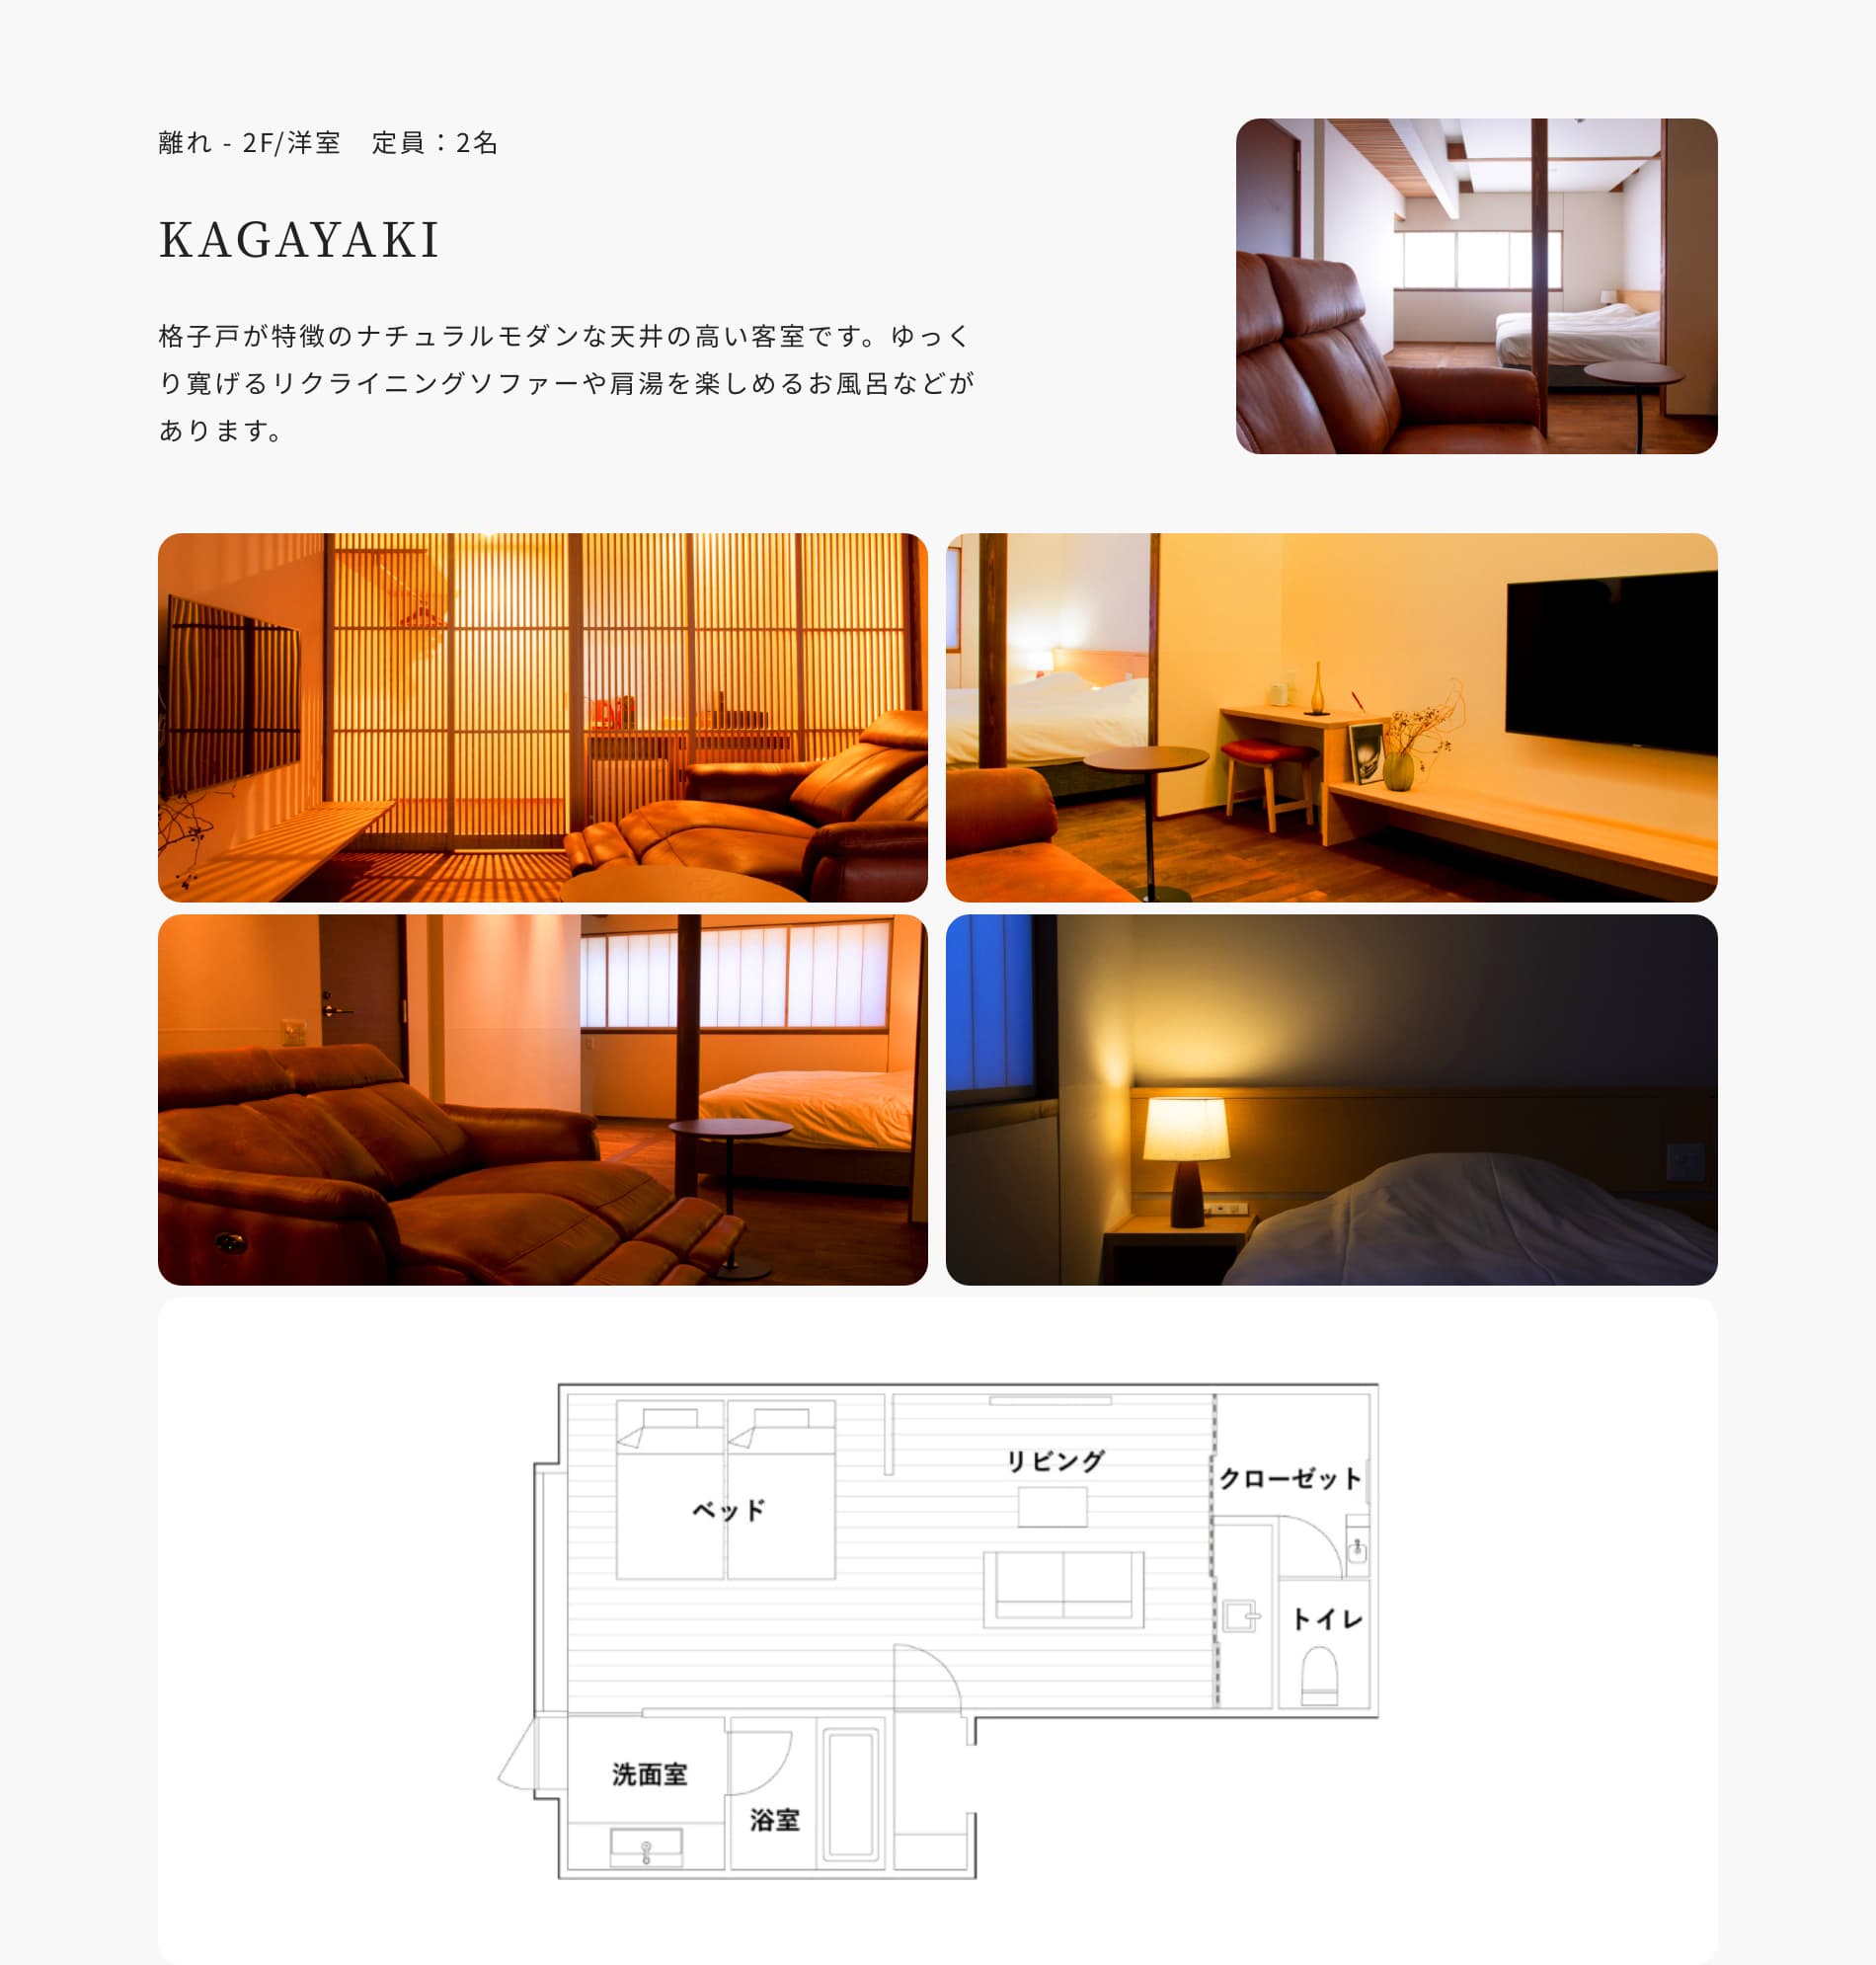 離れ - 2F/洋室 定員:2名 KAGAYAKI 格子戸が特徴のナチュラルモダンな天井の高い客室です。ゆっくり寛げるリクライニングソファーや肩湯を楽しめるお風呂などがあります。